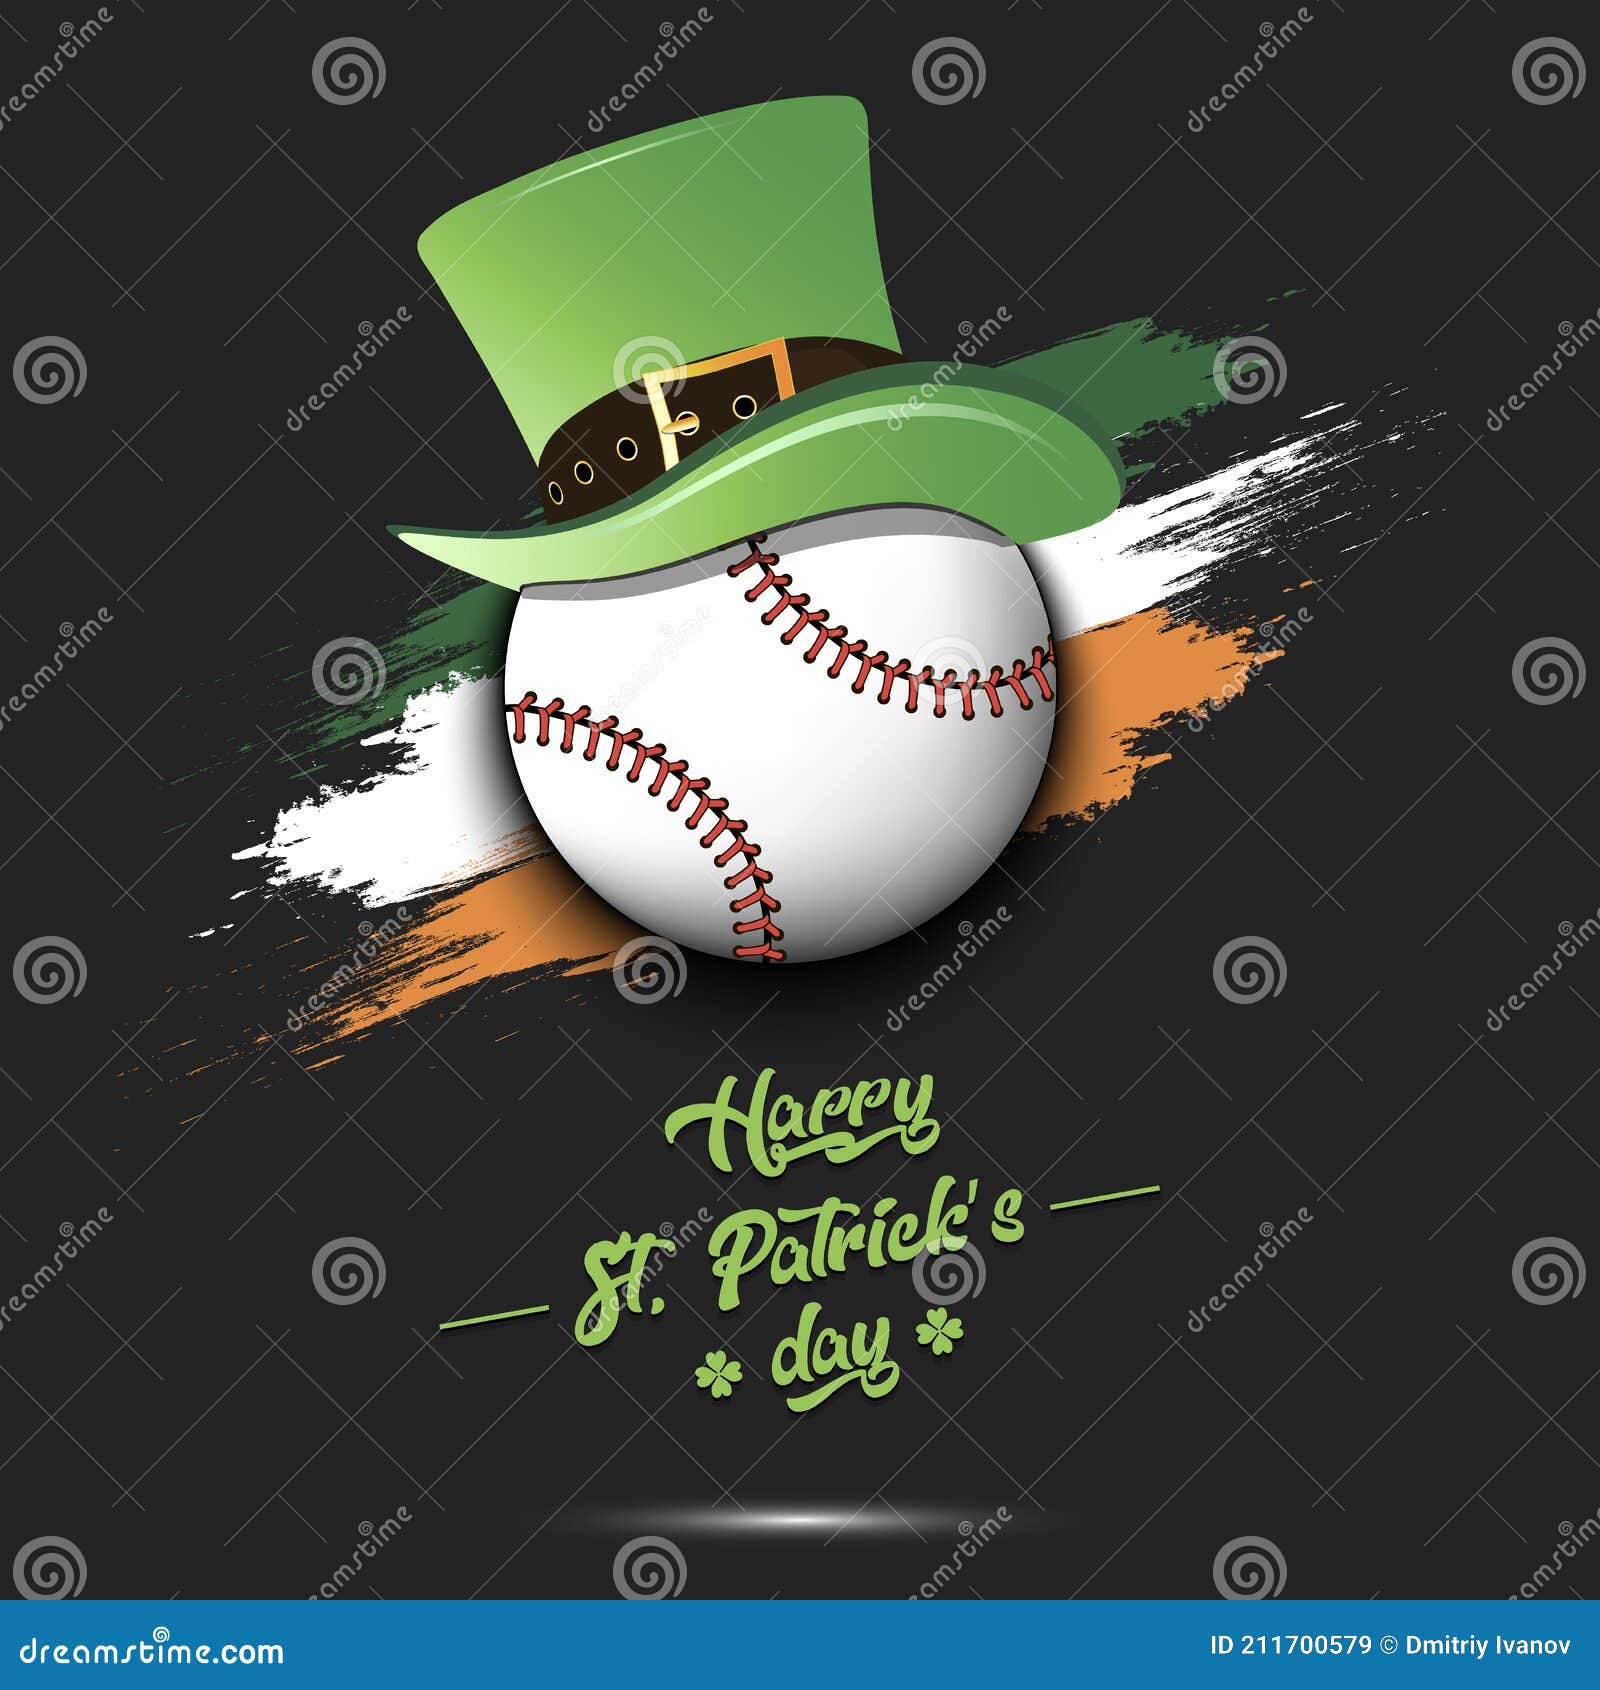 Baseball Irish Stock Illustrations – 275 Baseball Irish Stock  Illustrations, Vectors & Clipart - Dreamstime